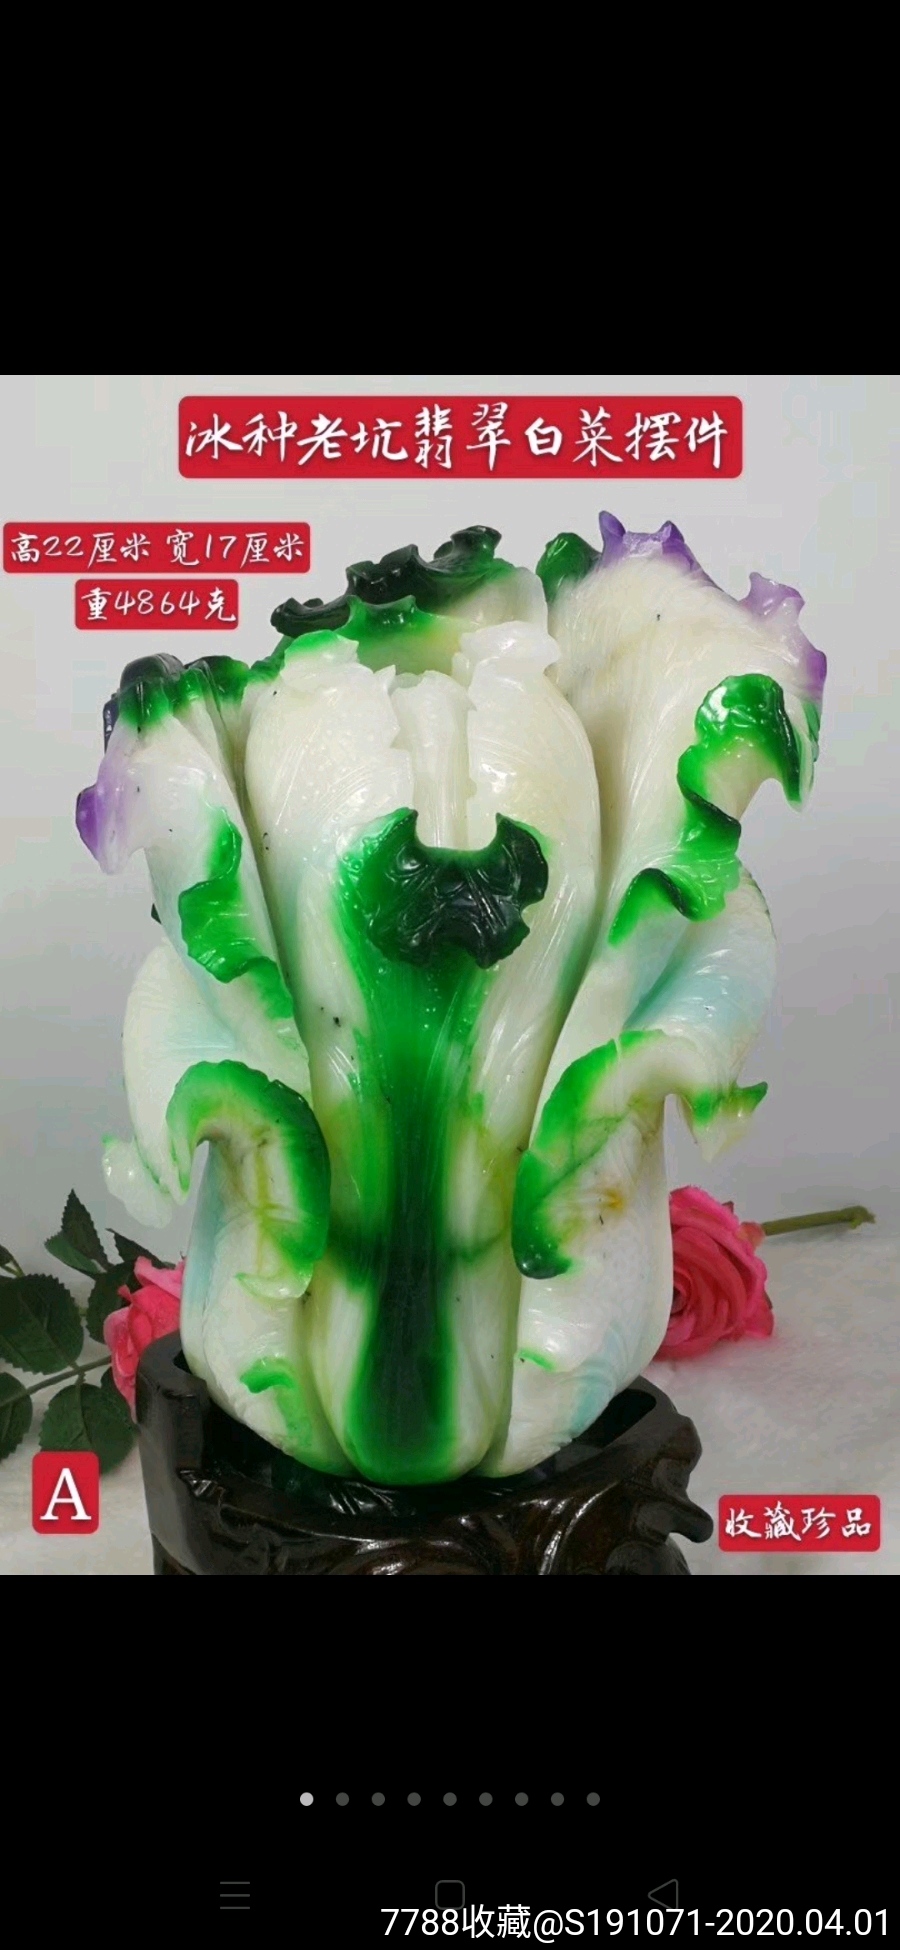 天然冰种三彩翡翠白菜摆件.雕刻精细,纹理清晰,层次